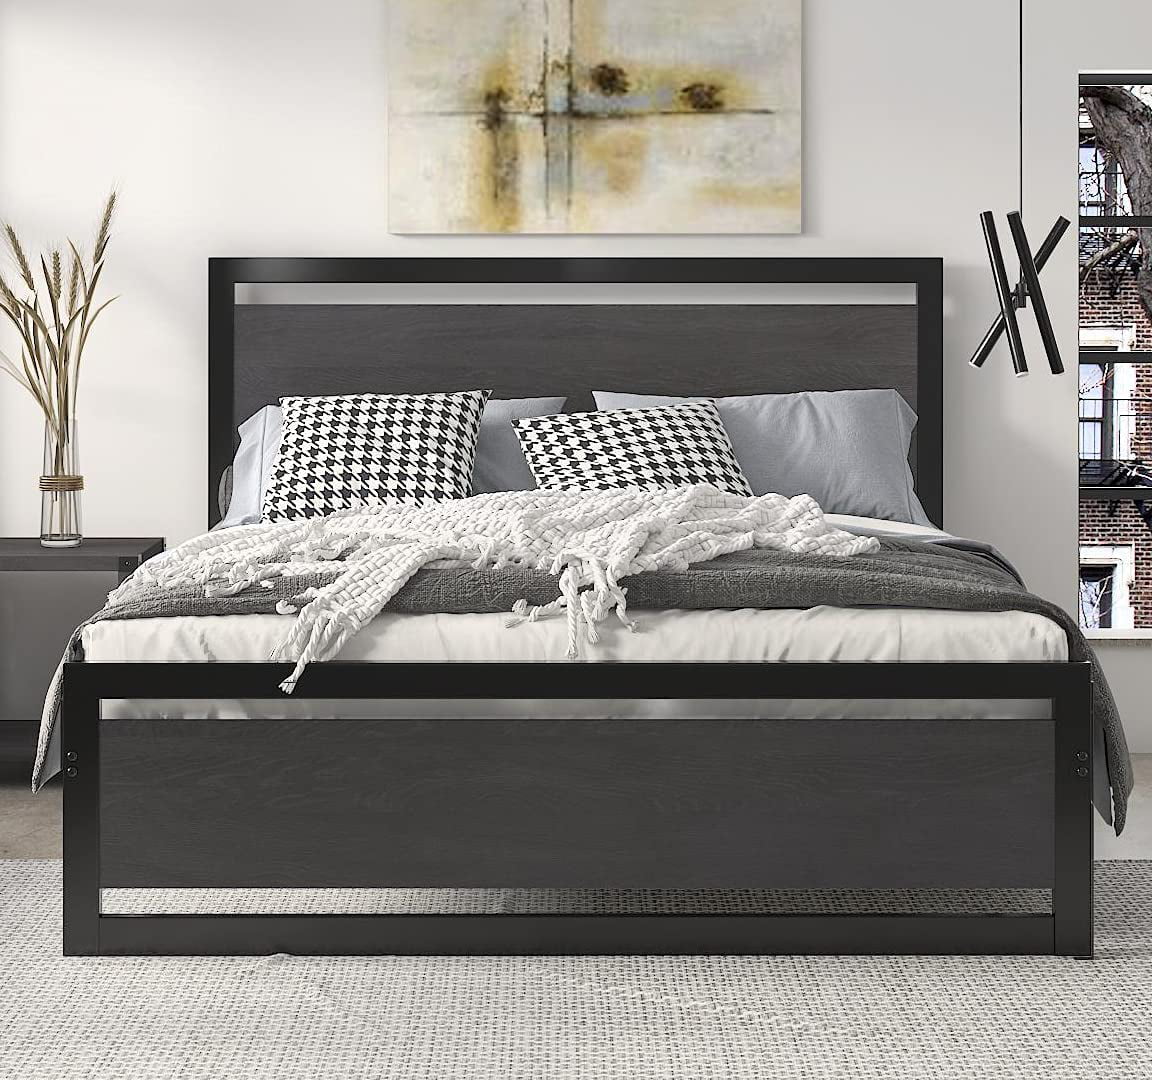 Platform Metal Bed Frame With Footboard, Full Size Wooden Bed Frame With Headboard And Footboard